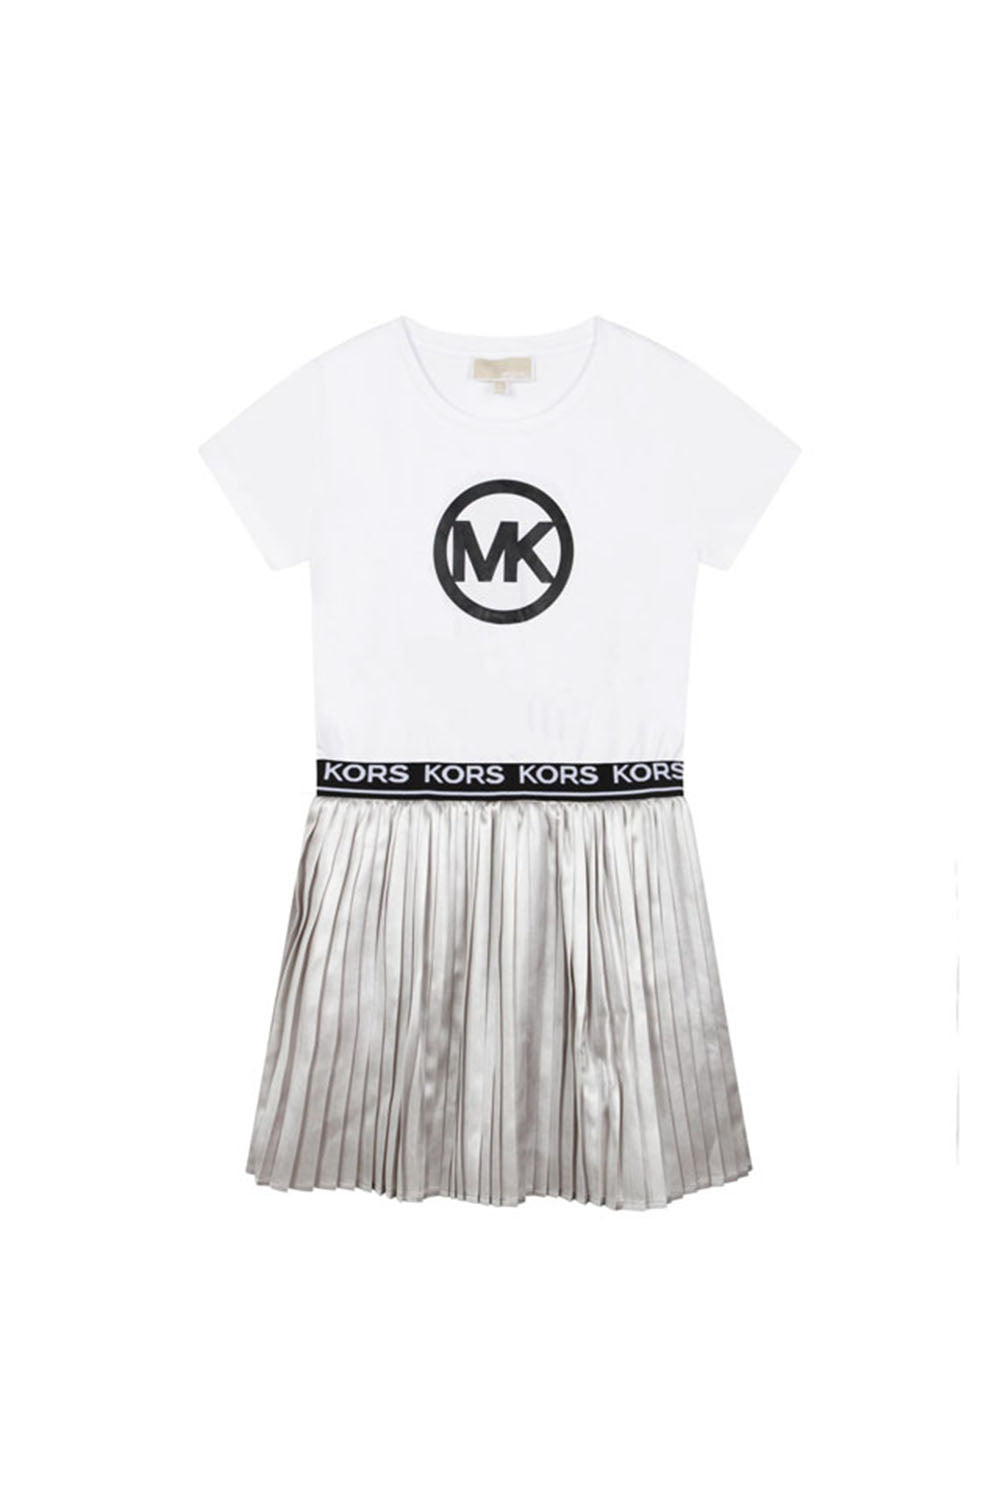 Mk Logo Dress for Girls - Maison7